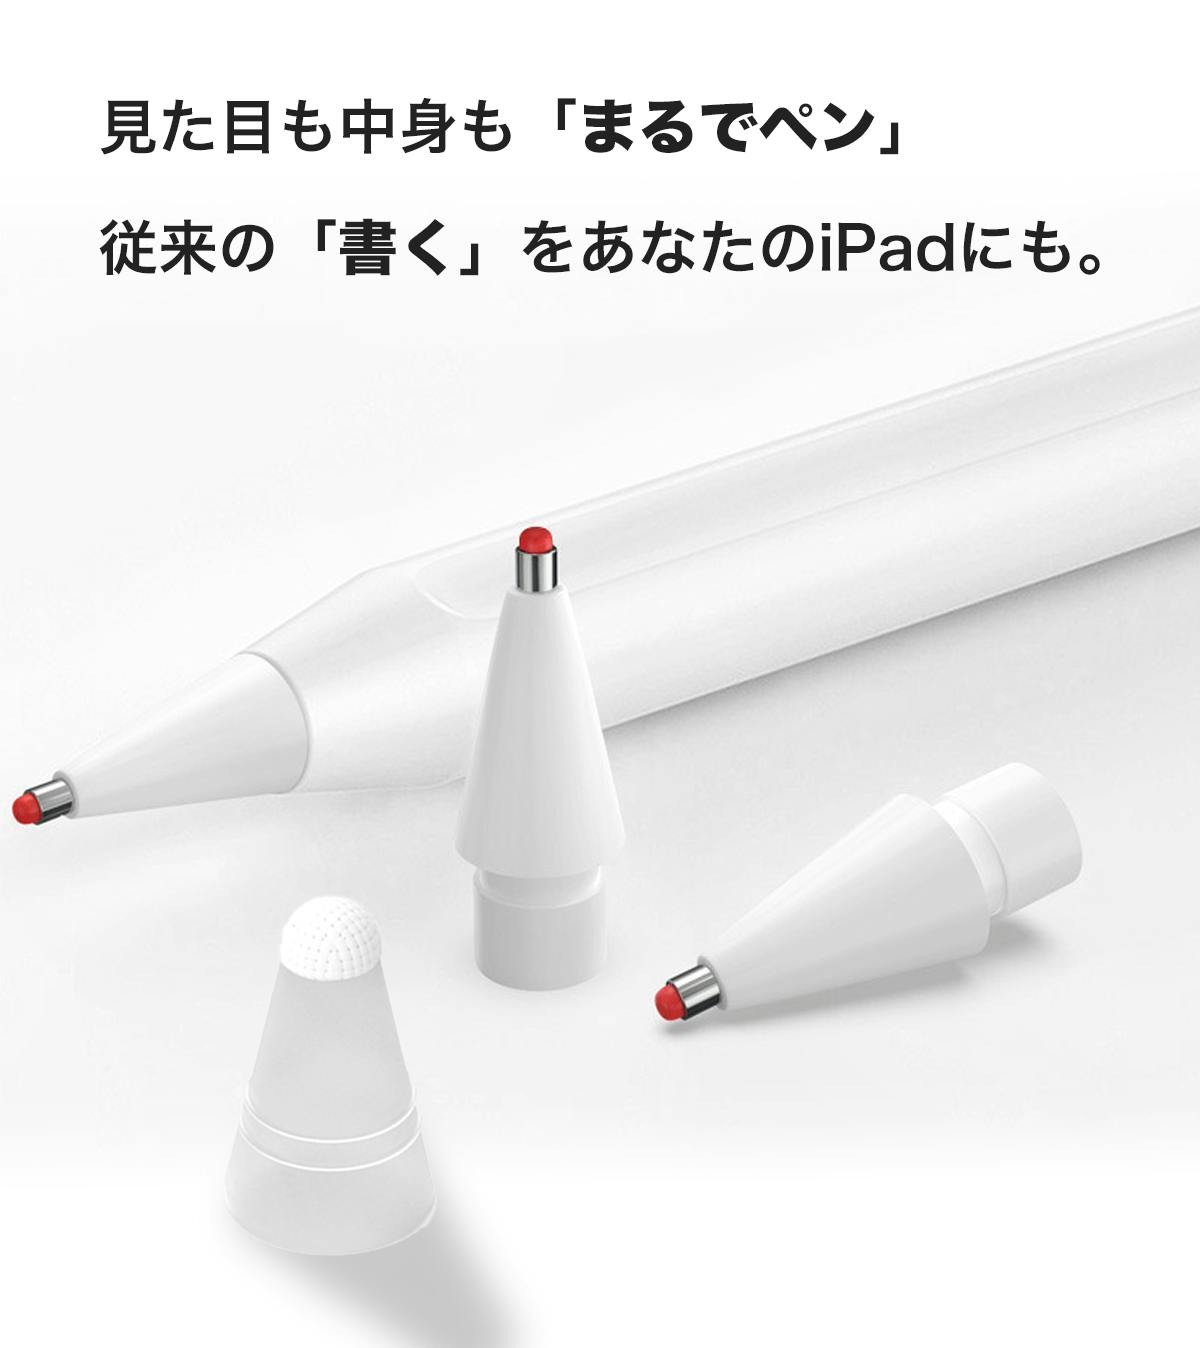 1757mm直径○Apple pencil(第一世代)○